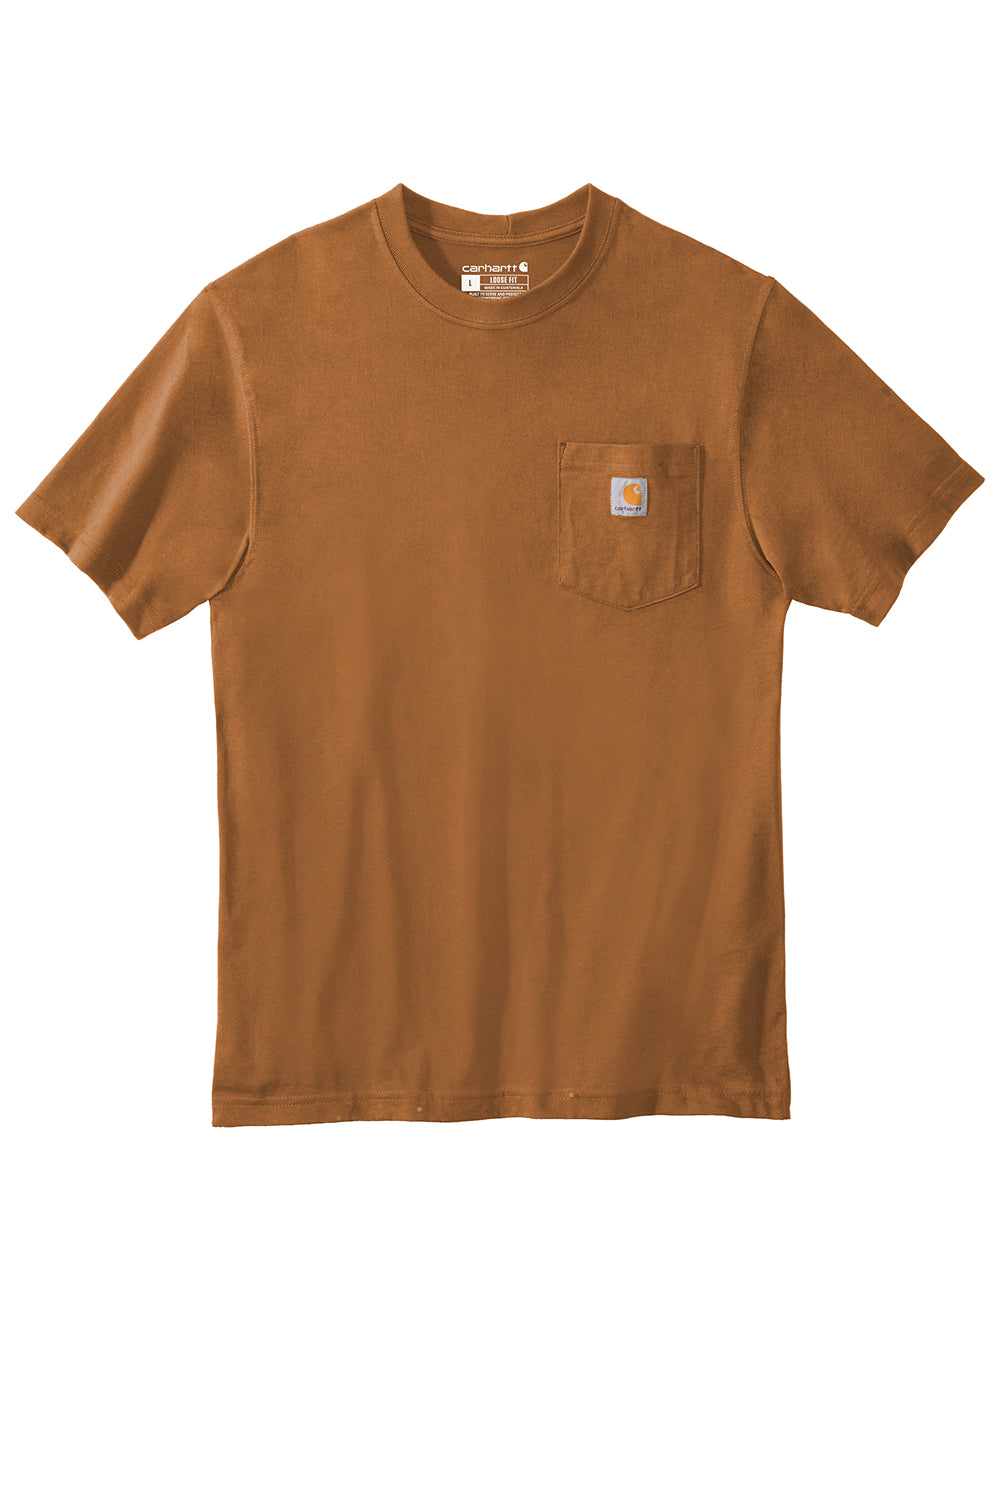 Carhartt CTK87/CTTK87 Mens Workwear Short Sleeve Crewneck T-Shirt w/ Pocket Carhartt Brown Flat Front